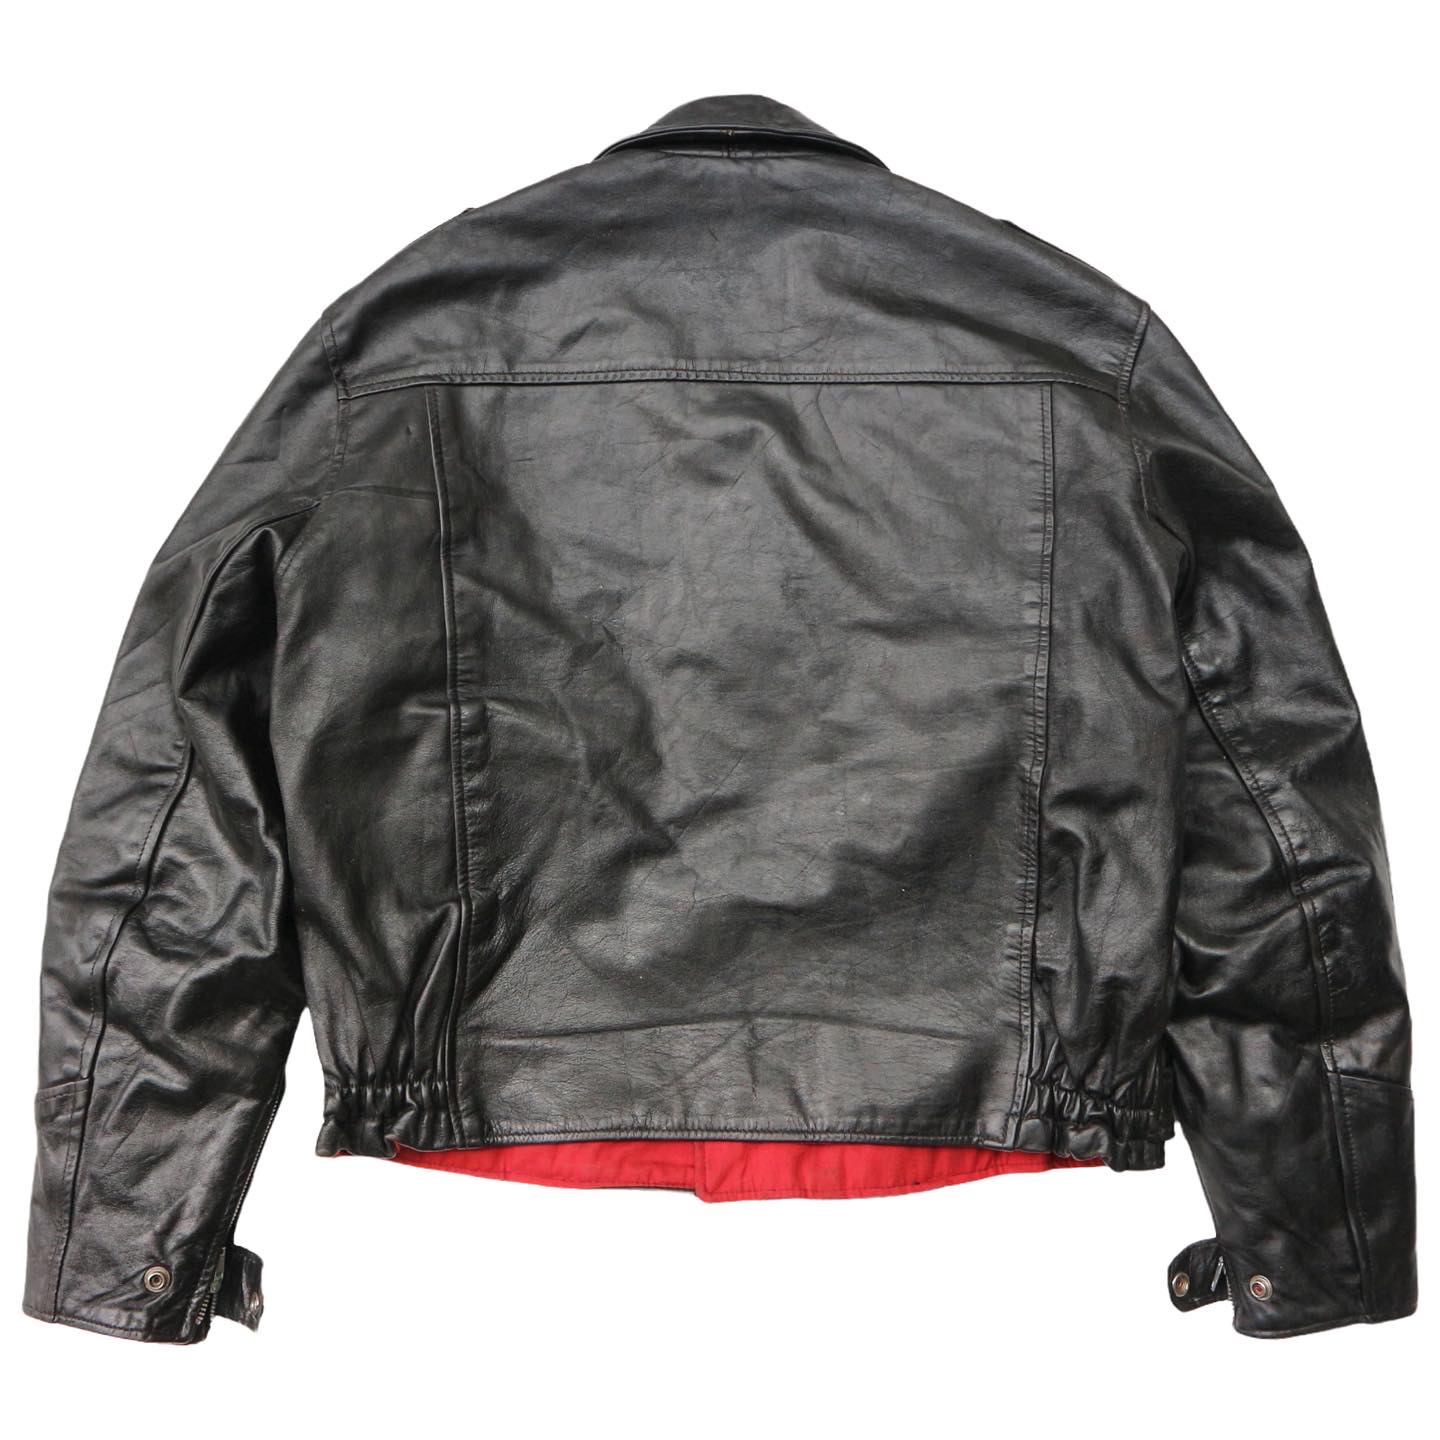 Vintage 70s Sears Biker Leather Jacket Size L